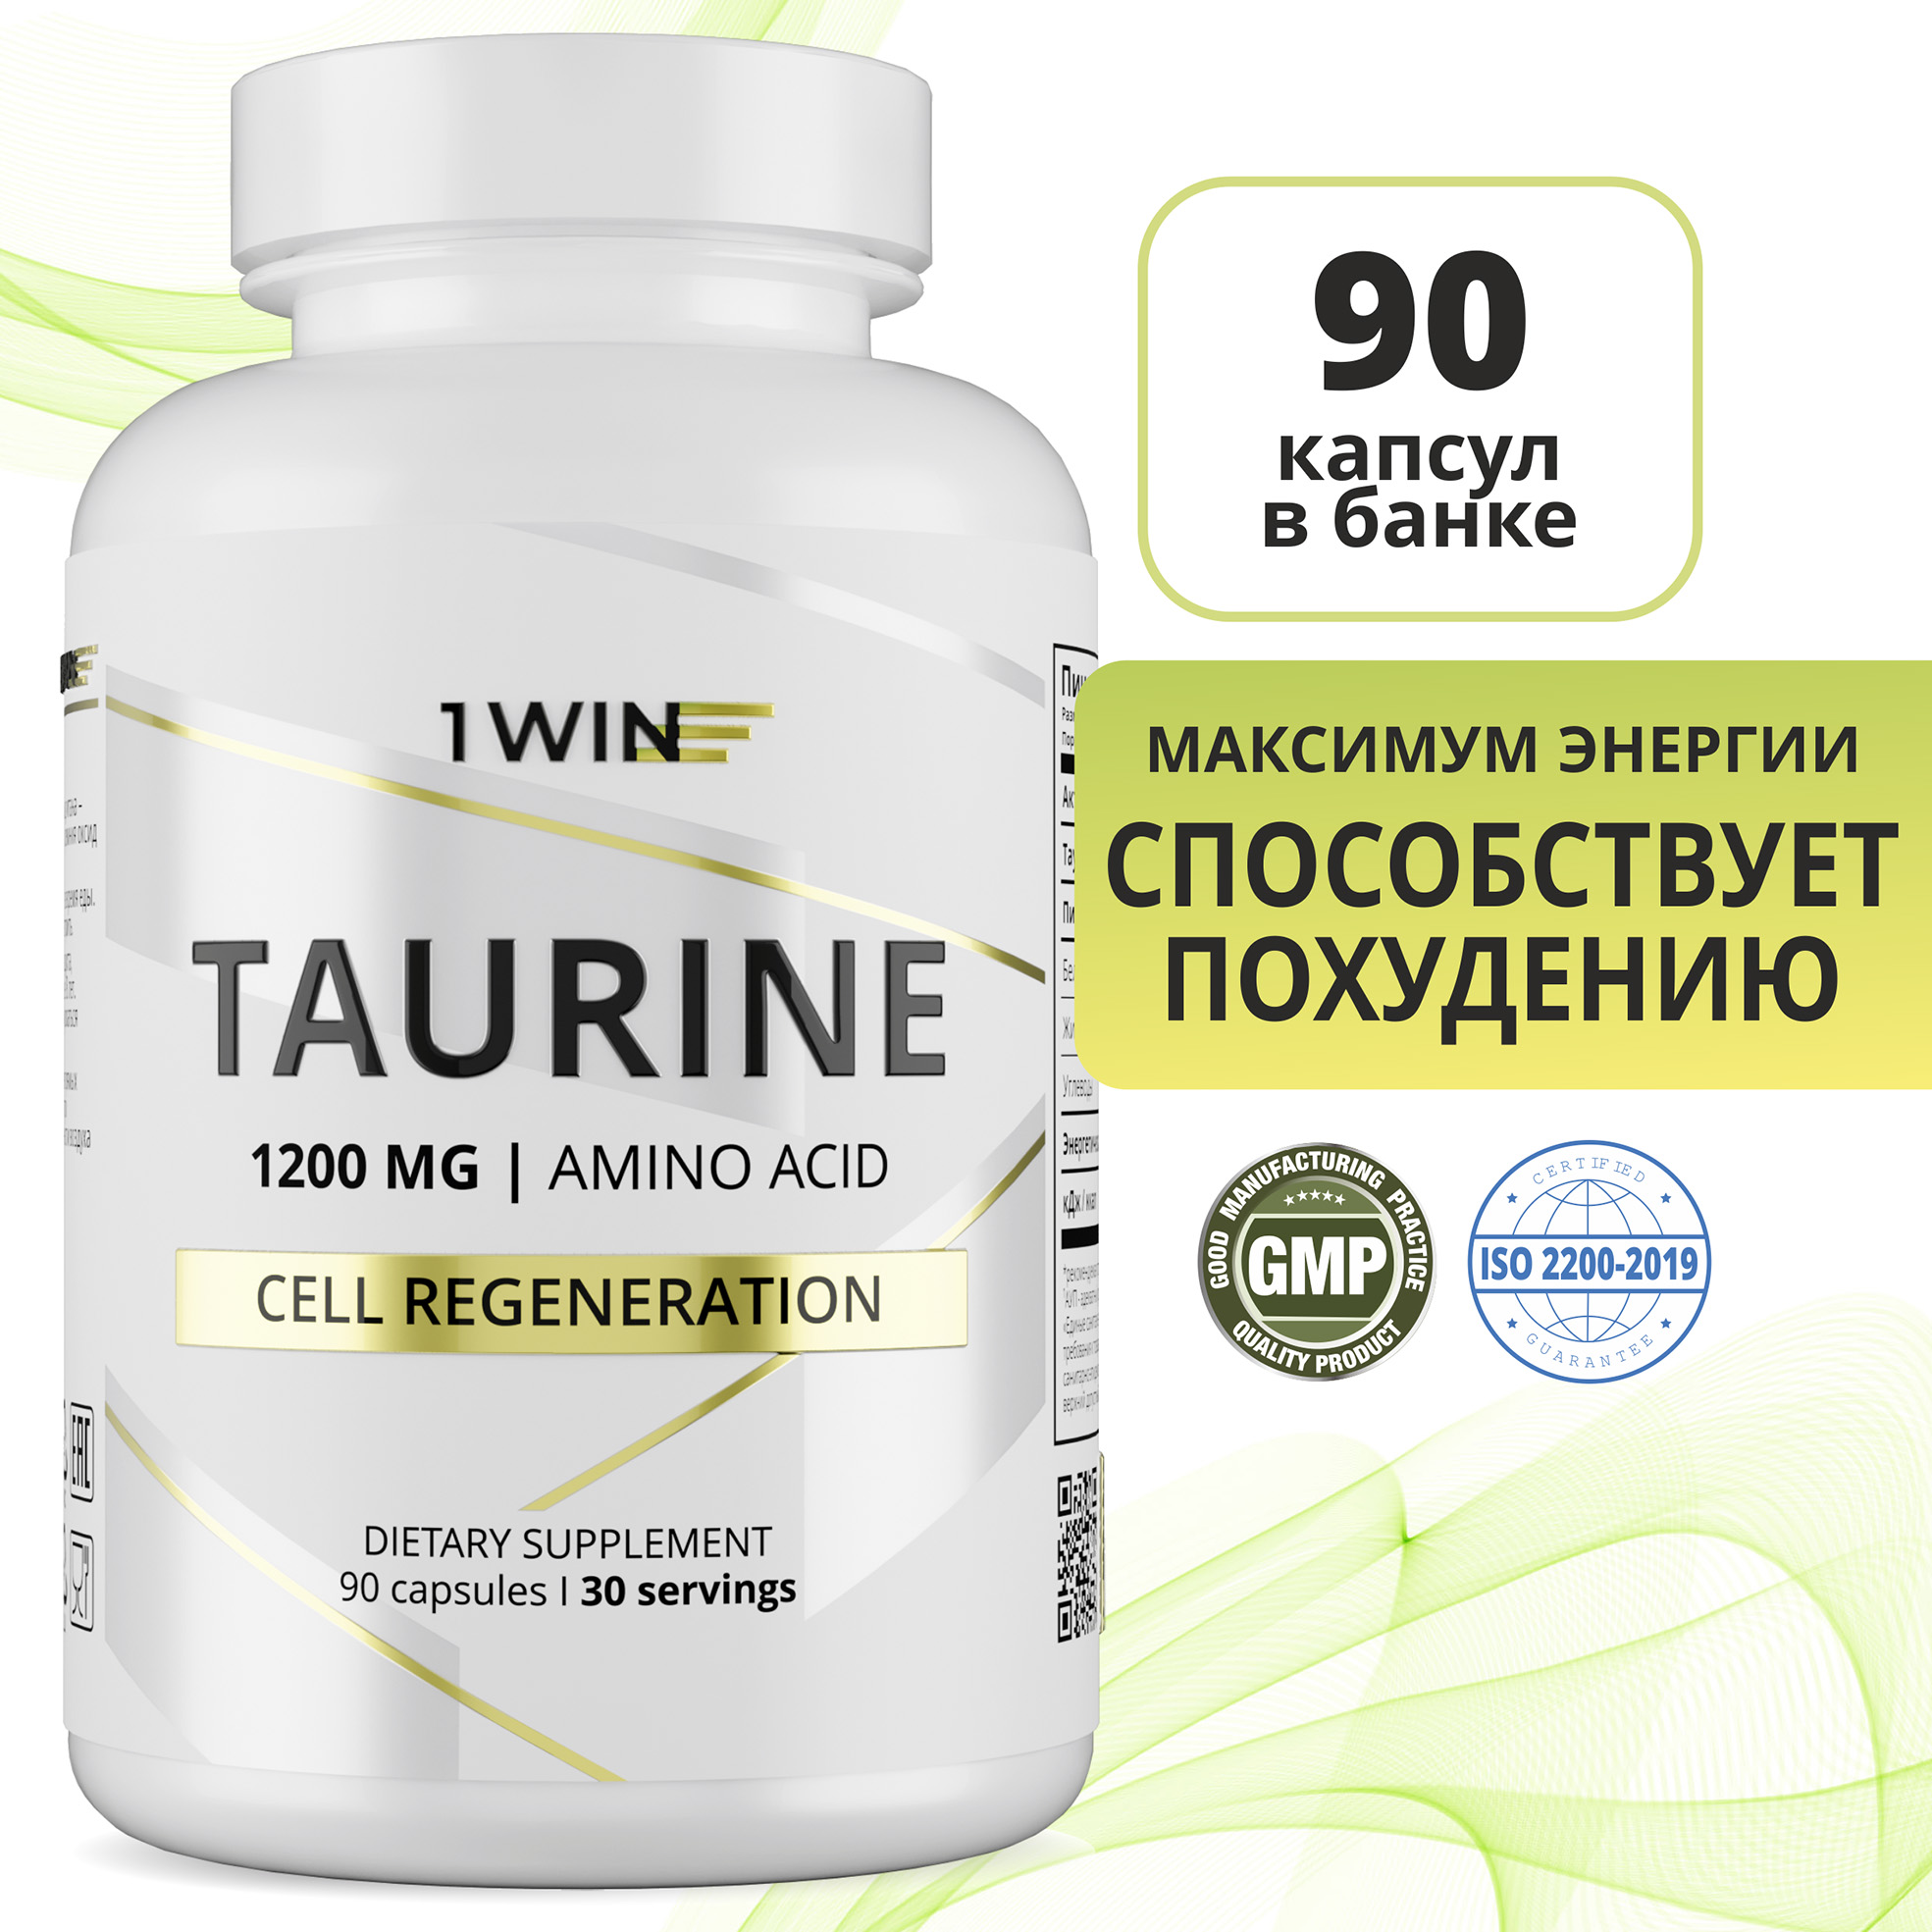 Аминокислота Таурин 1WIN 1200 мг (Taurine), для сердца, энергии и зрения, 90 капсул - купить в Москве, цены на Мегамаркет | 600011624721